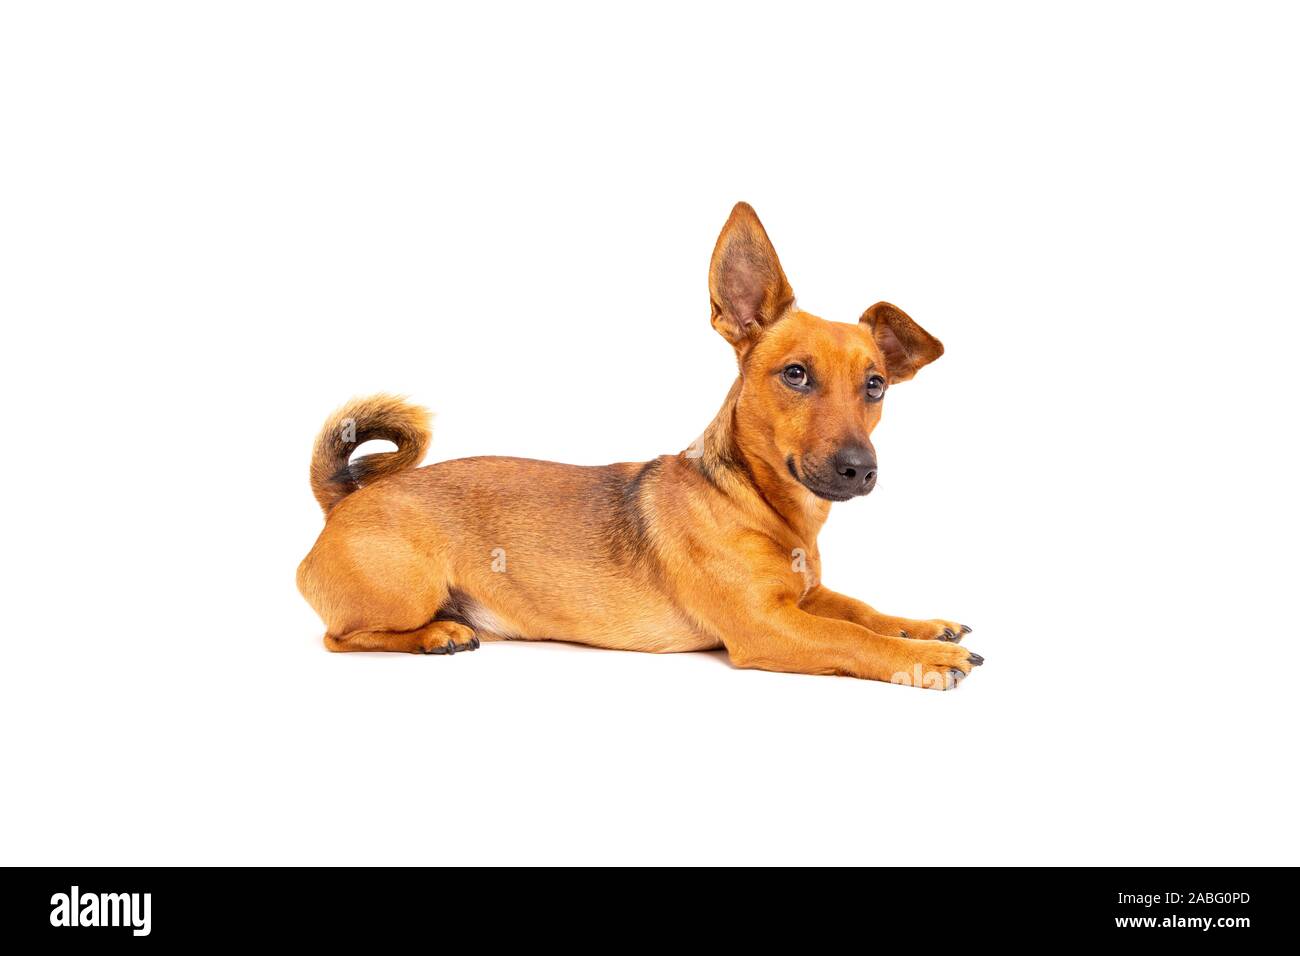 Kleine braune Hund auf dem Boden sitzend auf weißem Hintergrund. Gemischte  Rasse des parson Jack Russell Terrier, Chihuahua und Schäferhund. Alter 2  Ihr Stockfotografie - Alamy